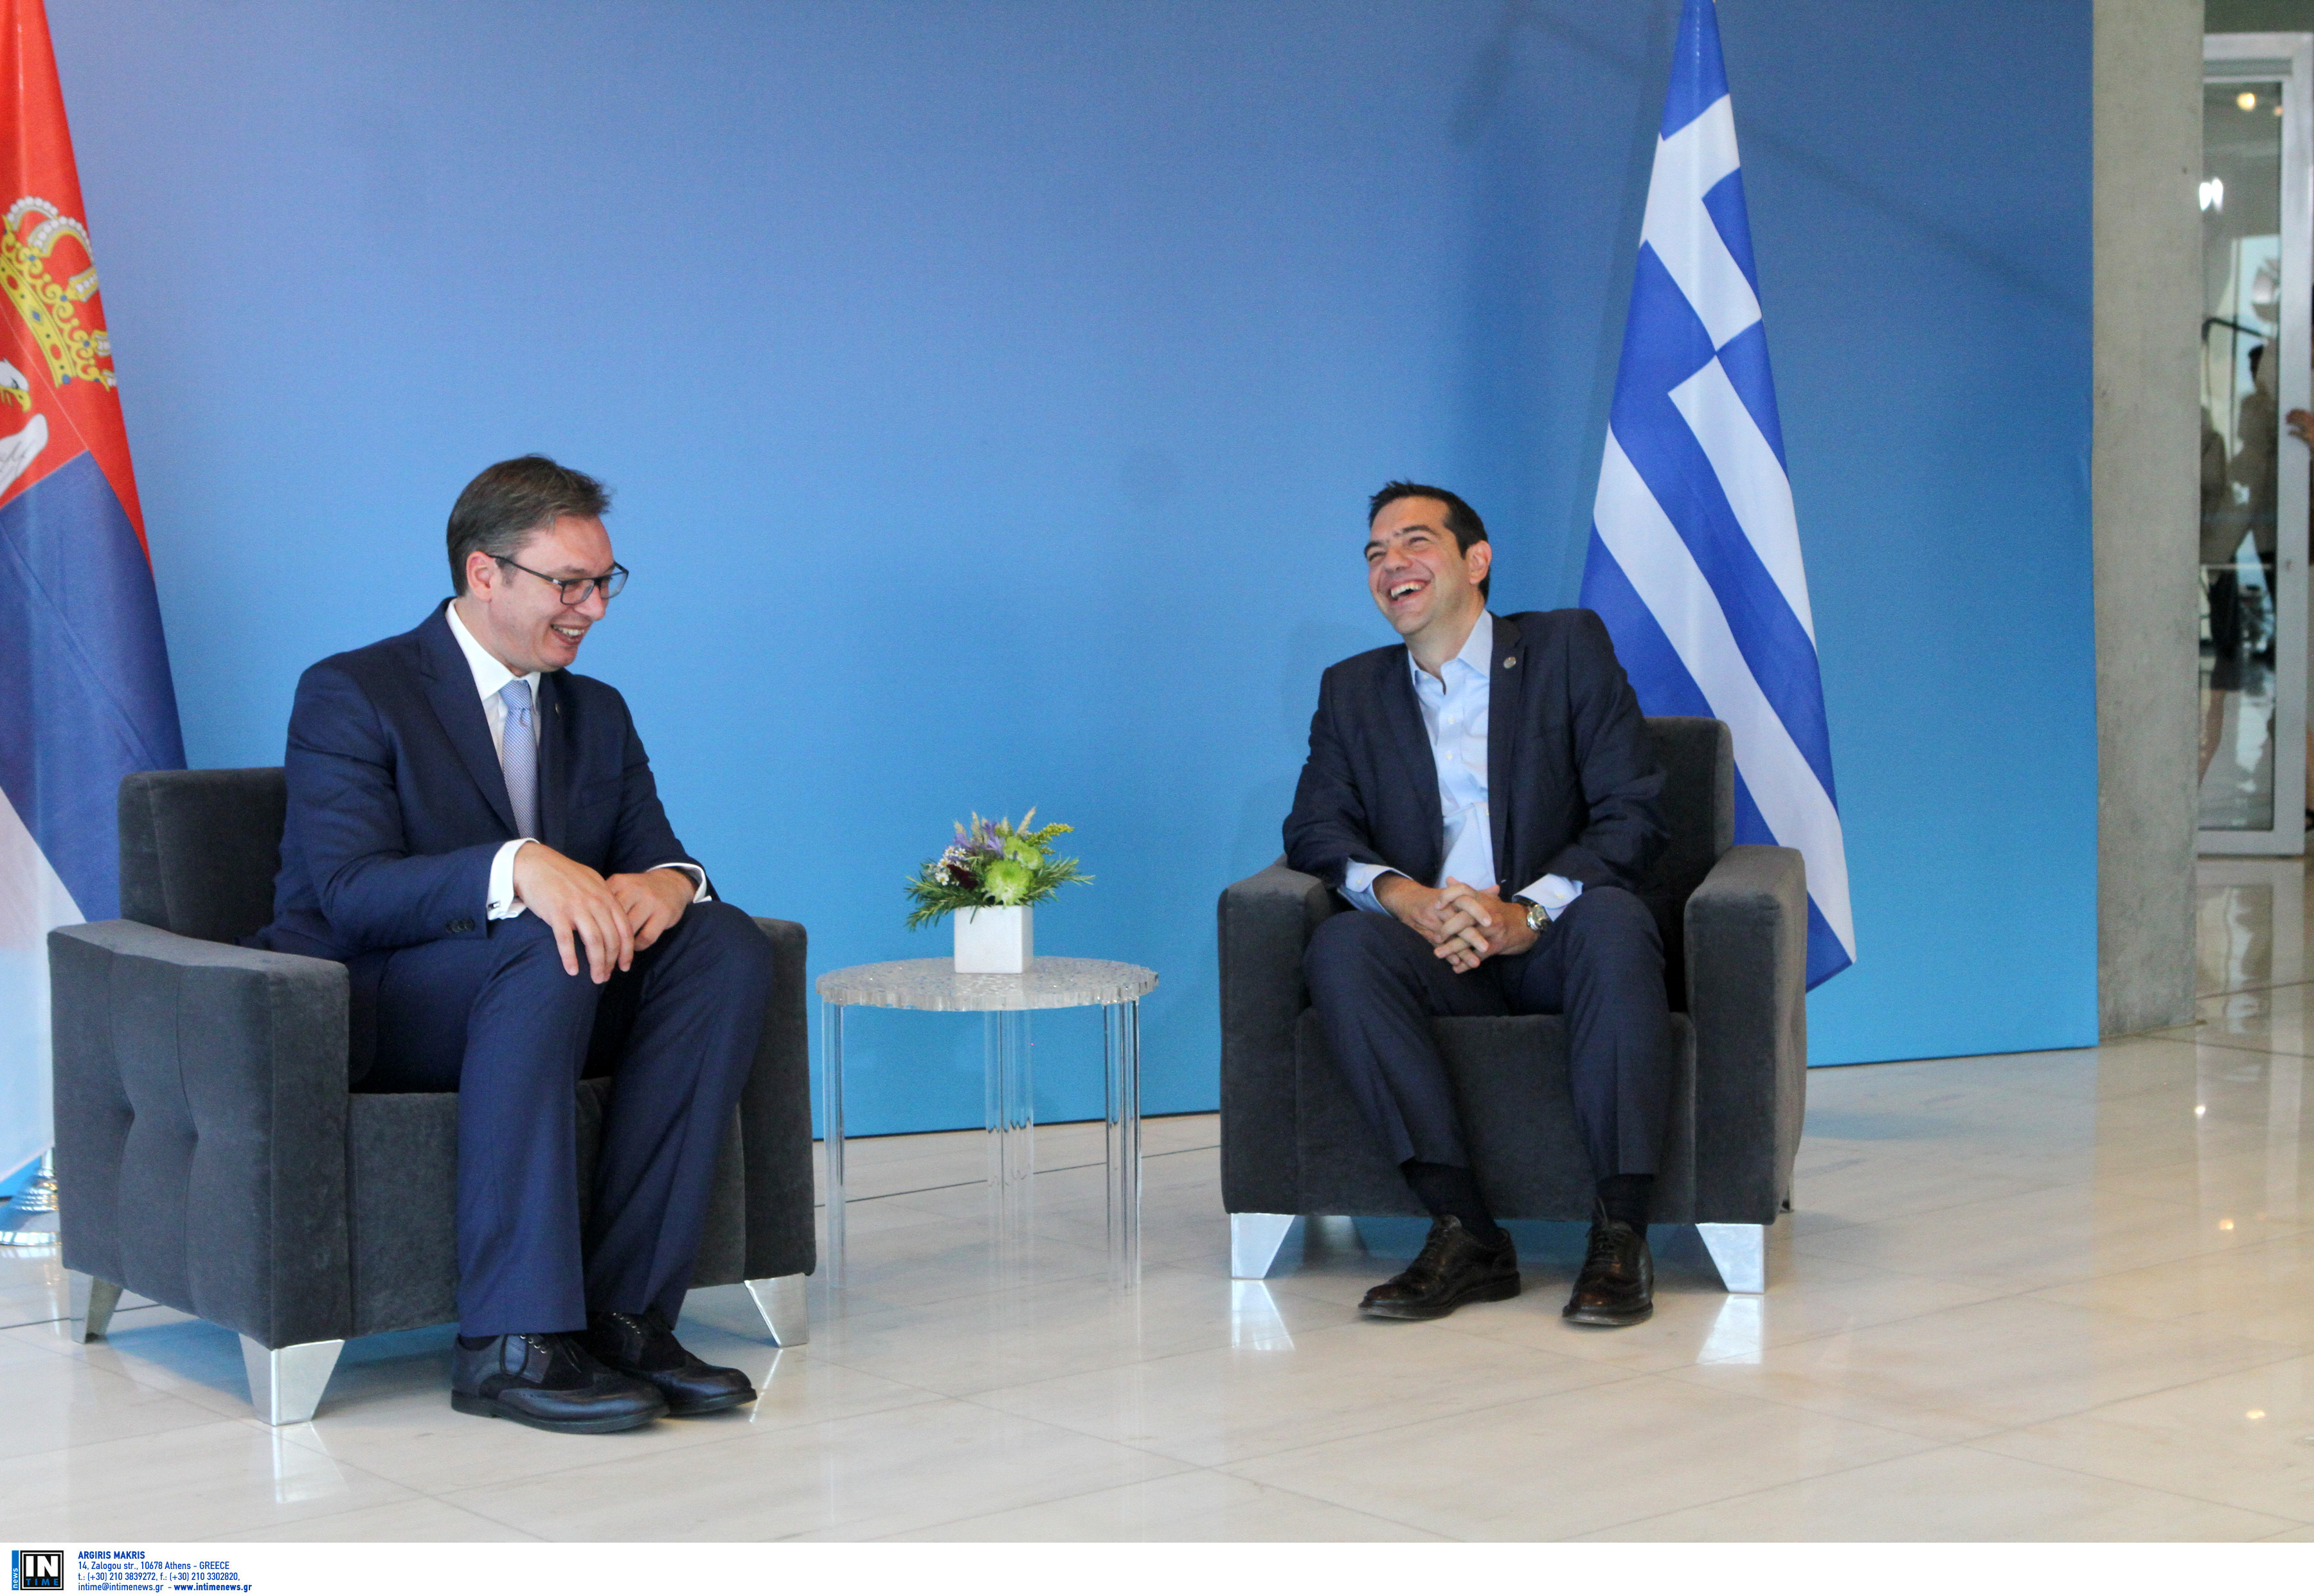 Τσίπρας: Αναβάθμιση ελληνοσερβικής συνεργασίας σε μια κρίσιμη περίοδο